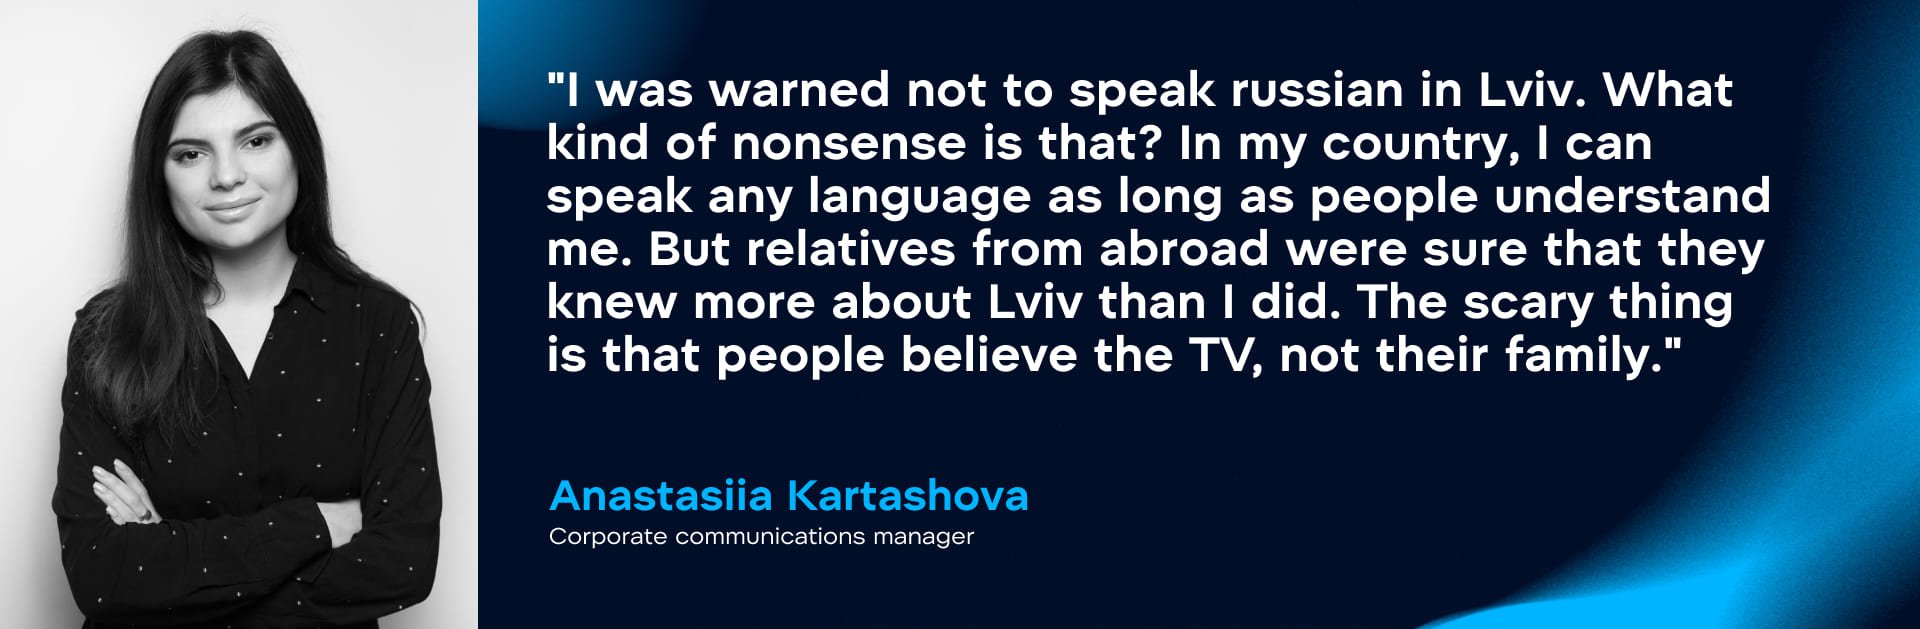 Anastasiia Kartashova, corporate communications manager. Credit: WePlay Holding